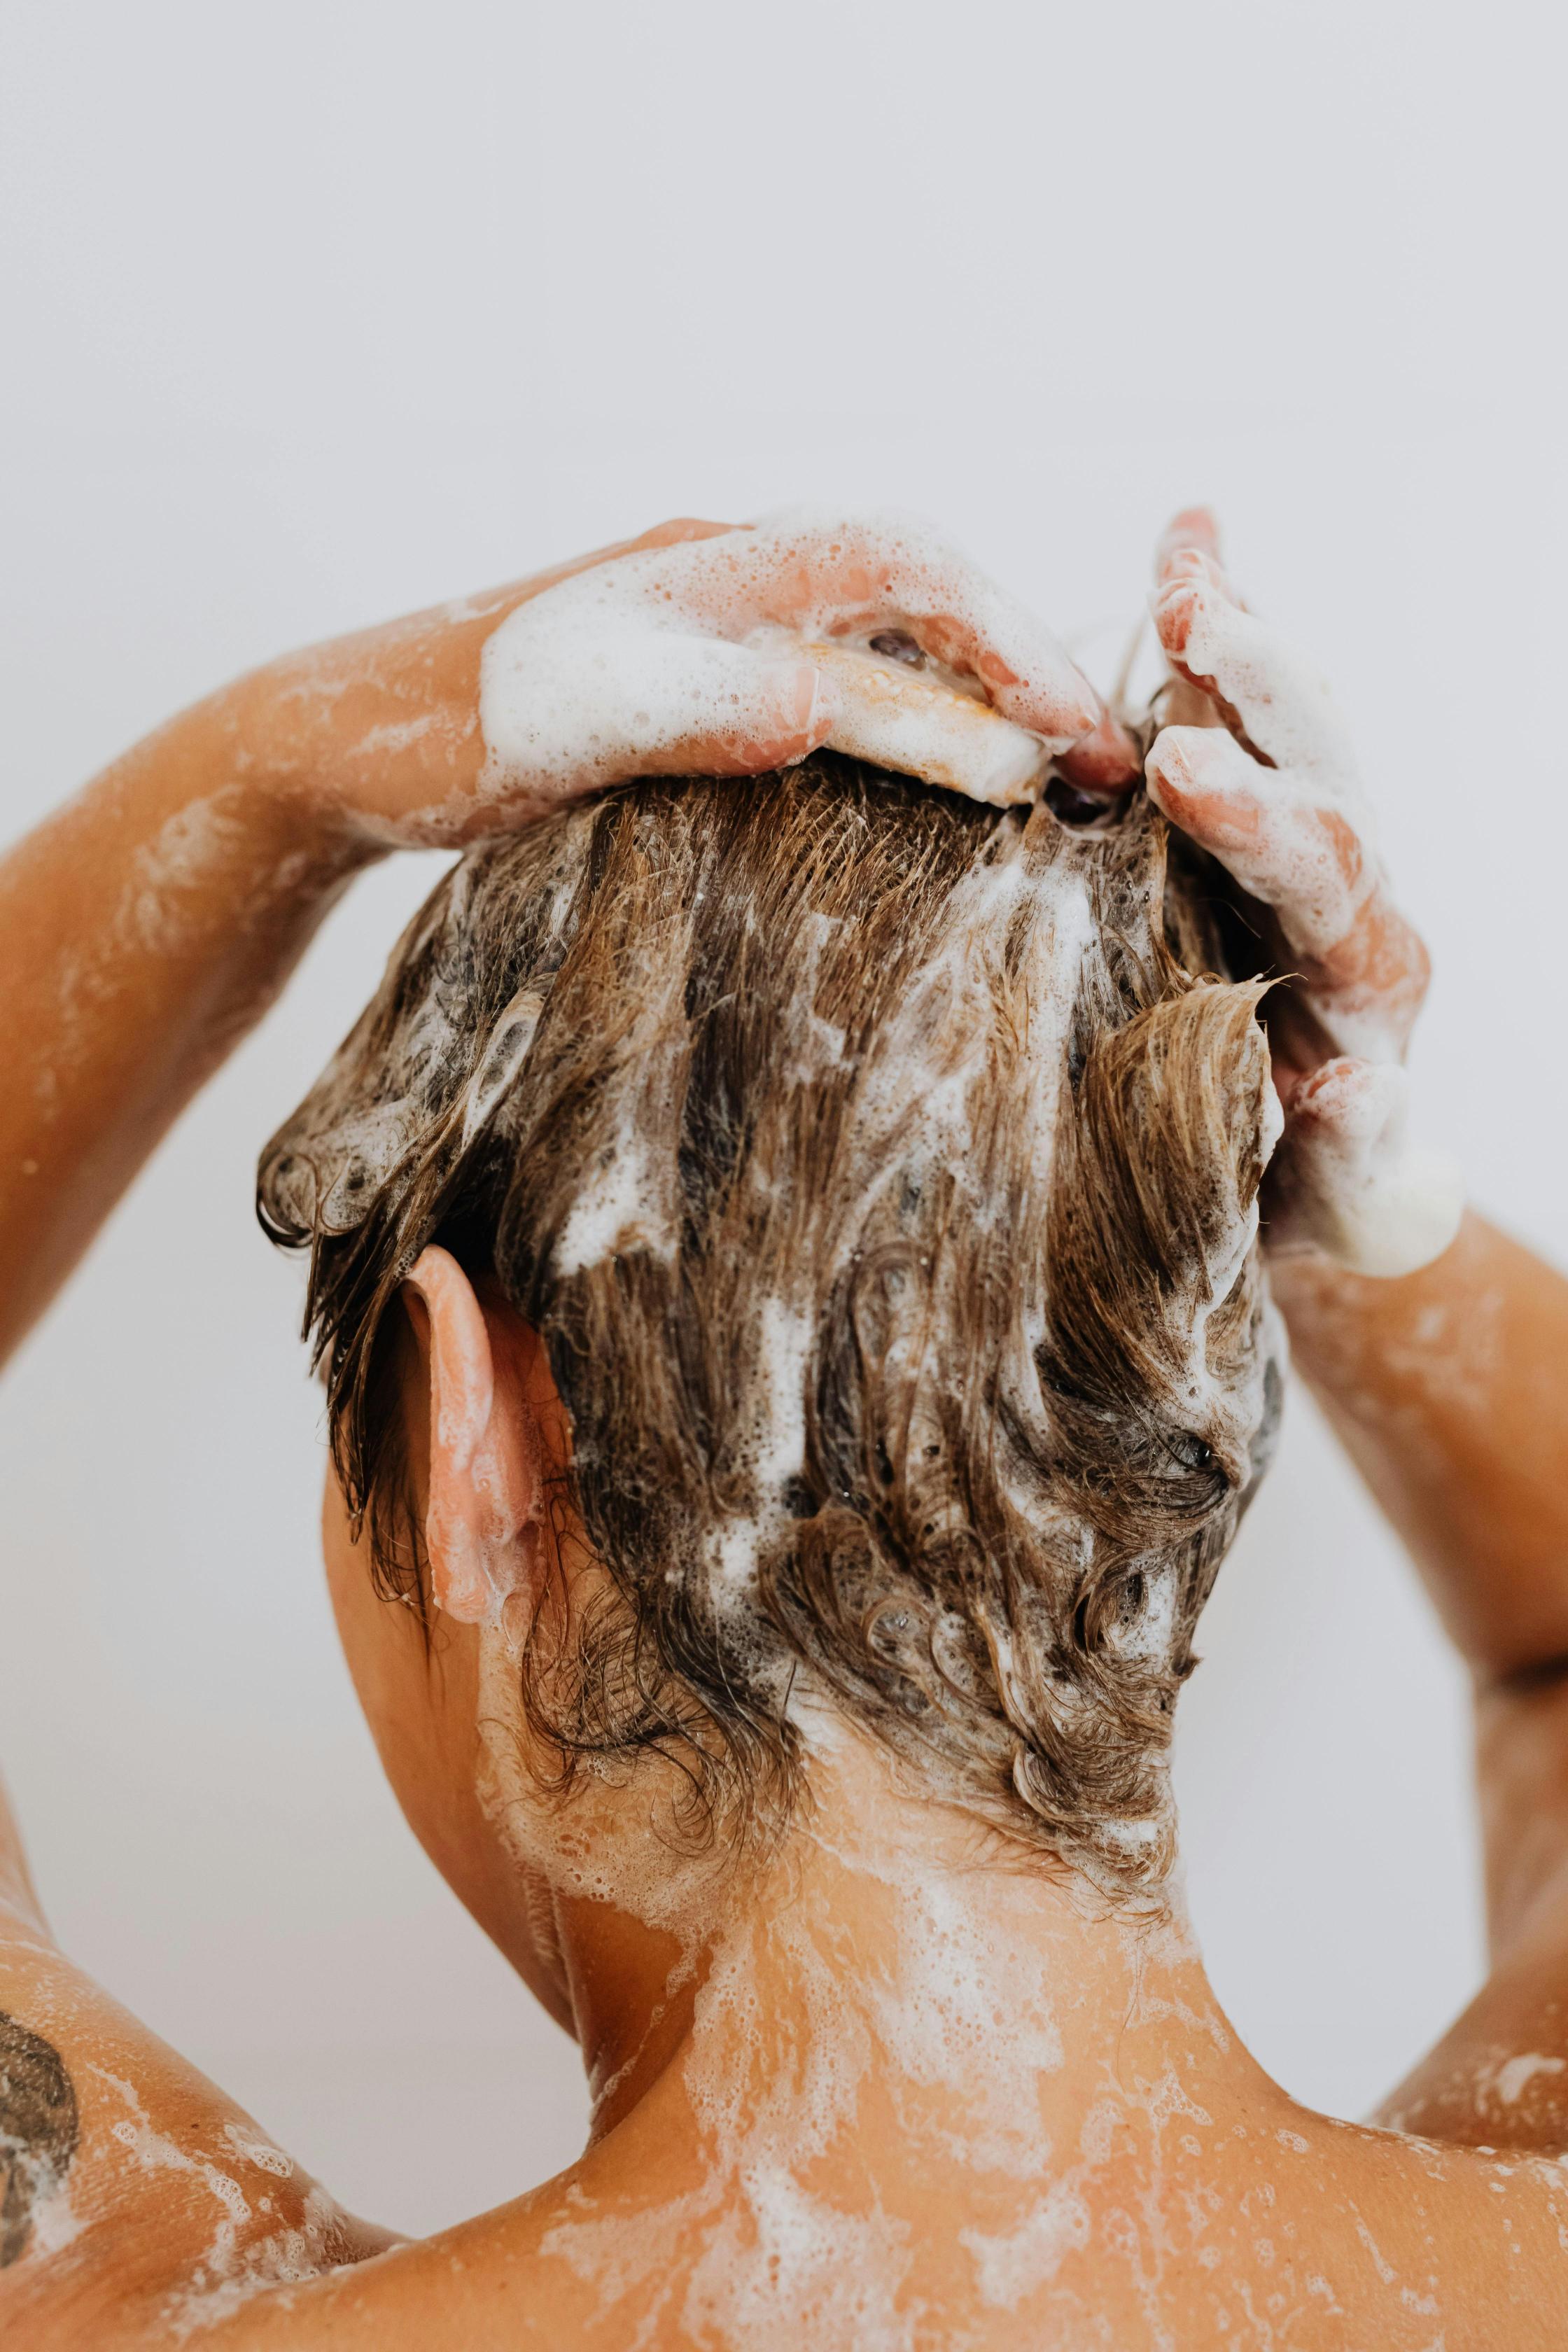 أسباب تساقط الشعر بعد الإستحمام هو الفرك القوي عندما يكون شعرك مبللاً